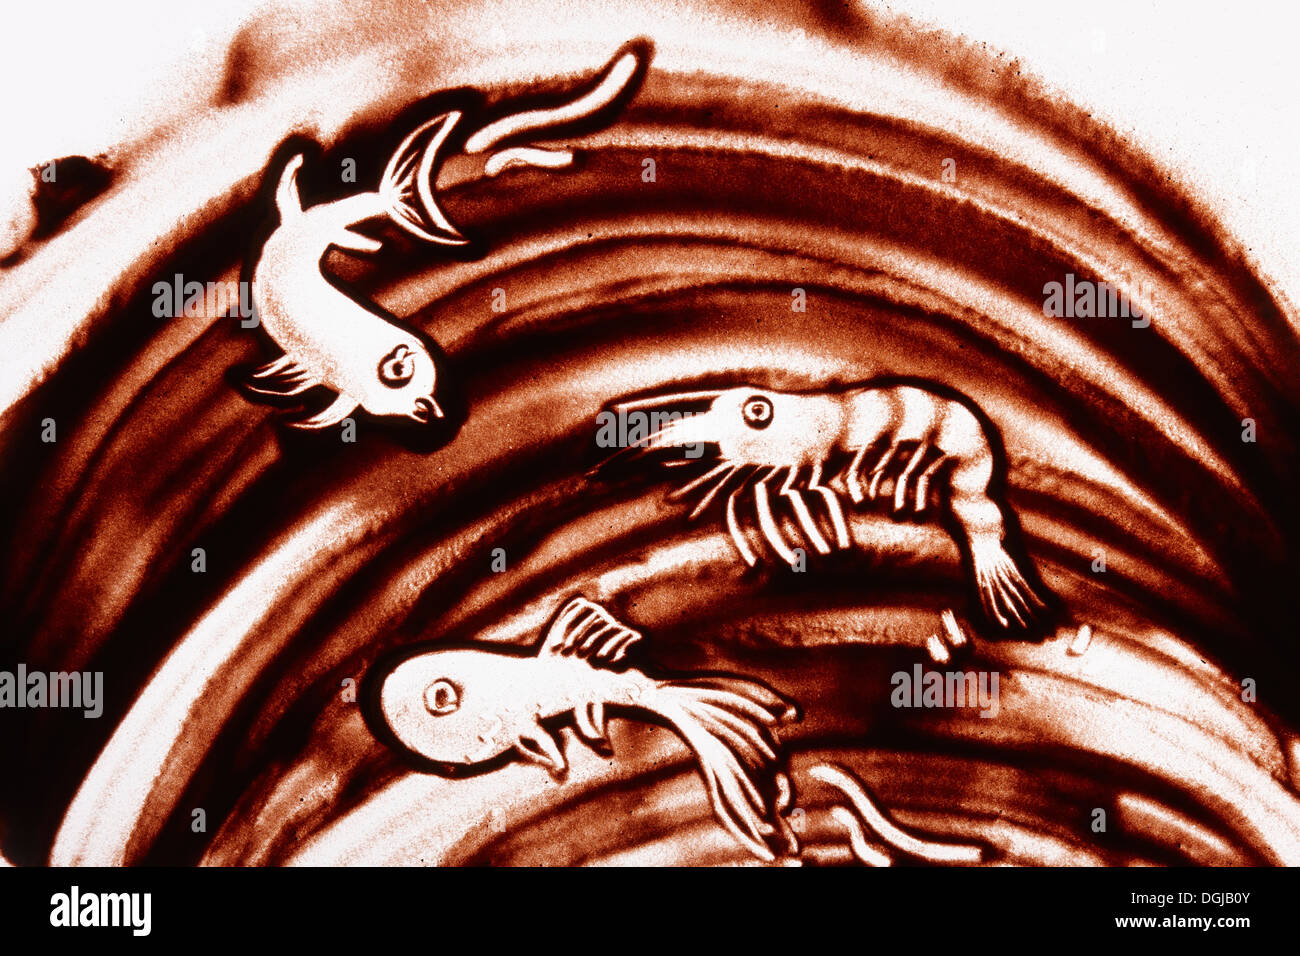 Un dessin sur sable de crevettes et de poissons dans la mer Banque D'Images